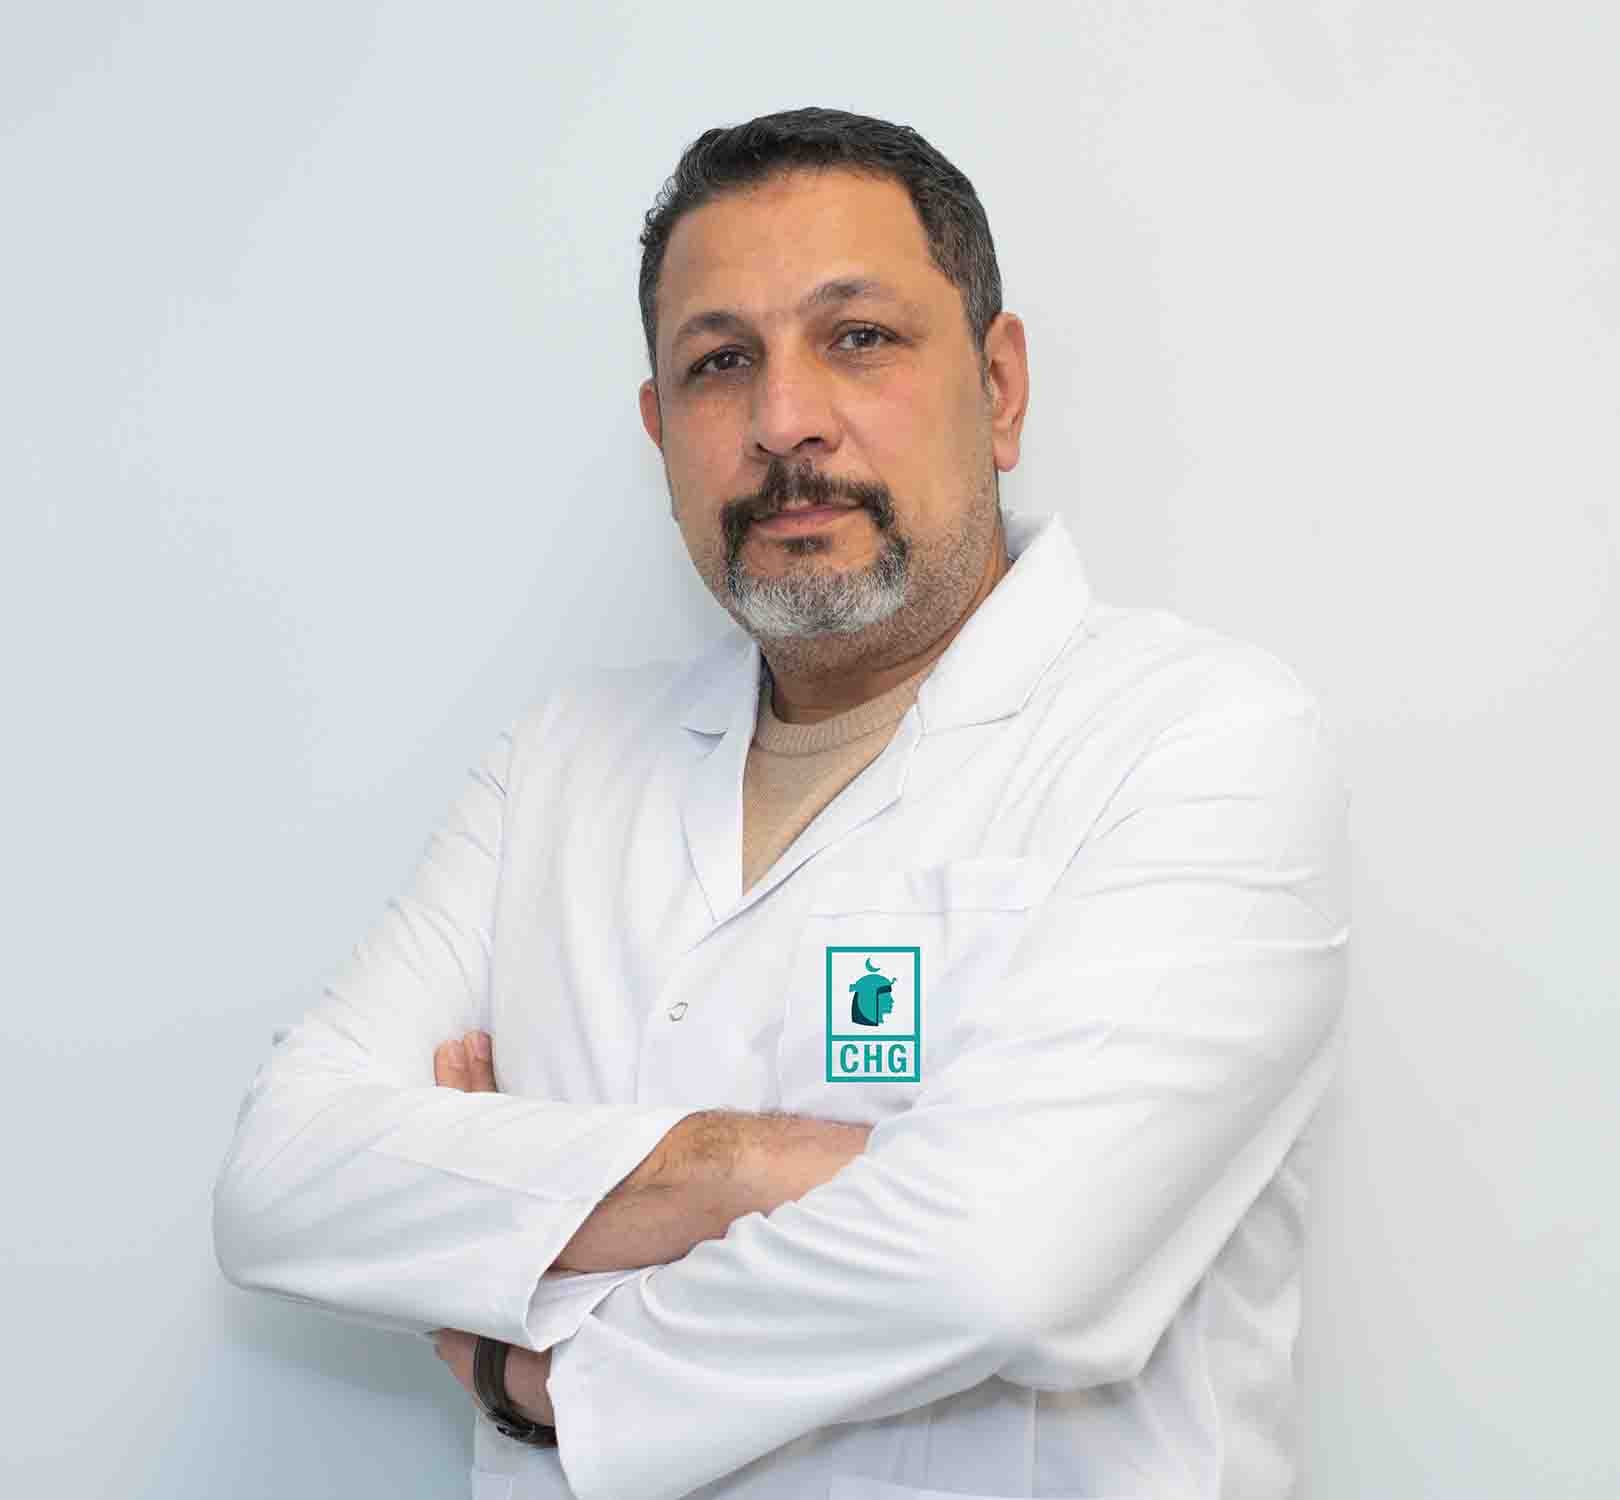 Dr. Gamal el din mohamed fathy mohamed abdelhafez